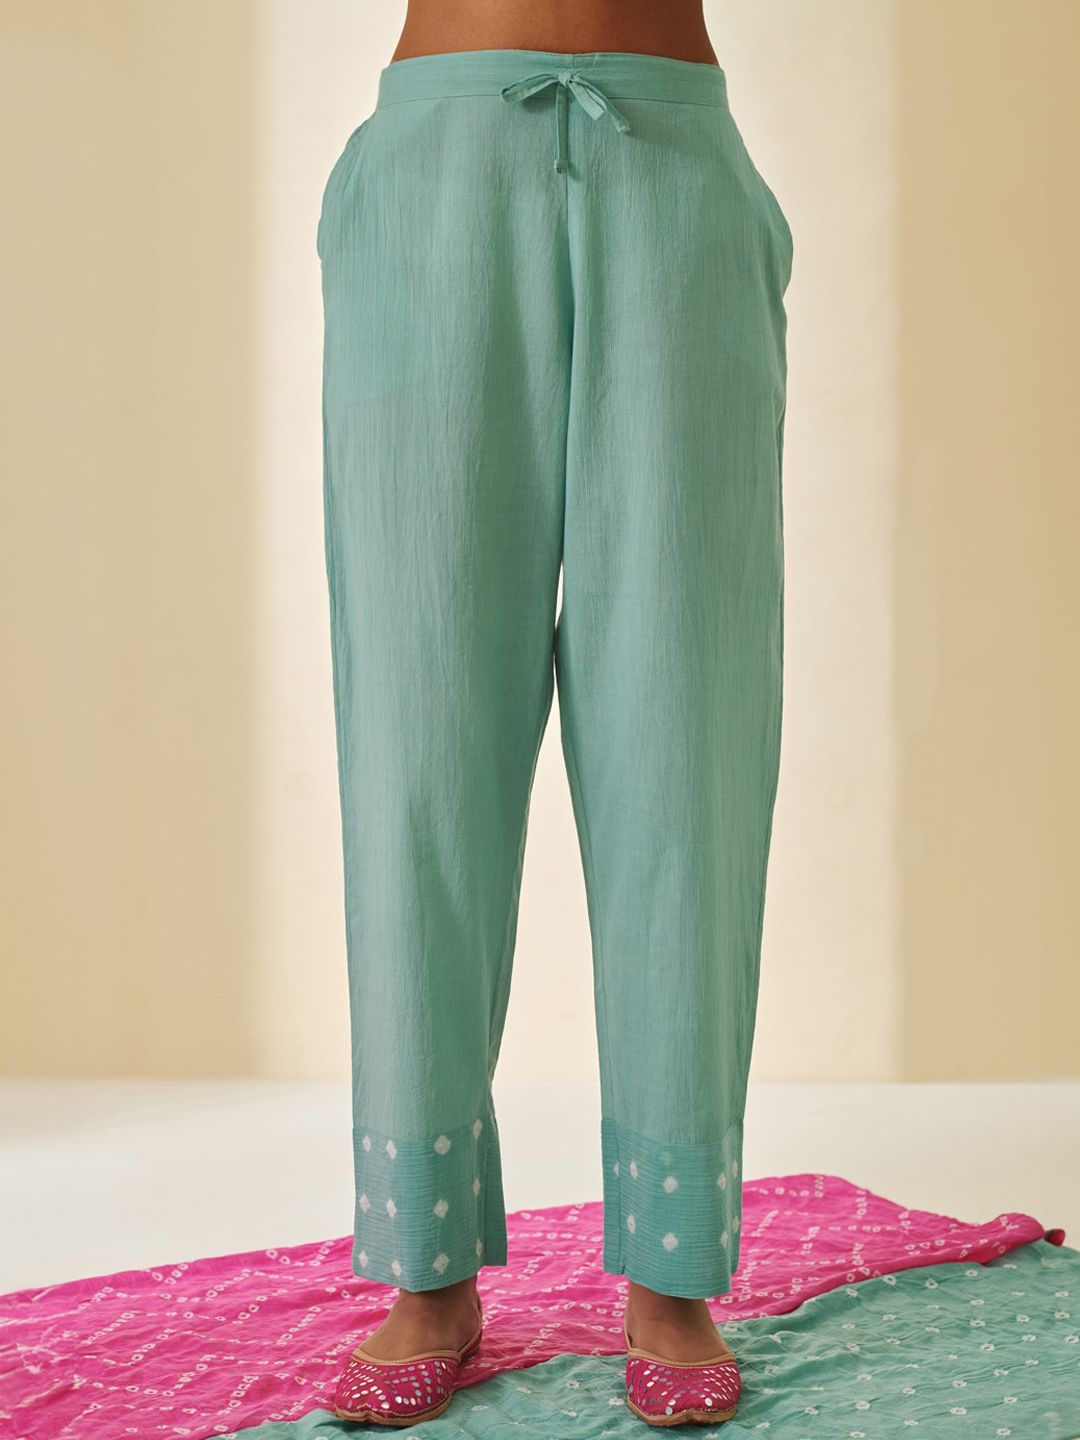 Prakriti Jaipur Women Regular Fit Cotton Regular Trousers Price in India